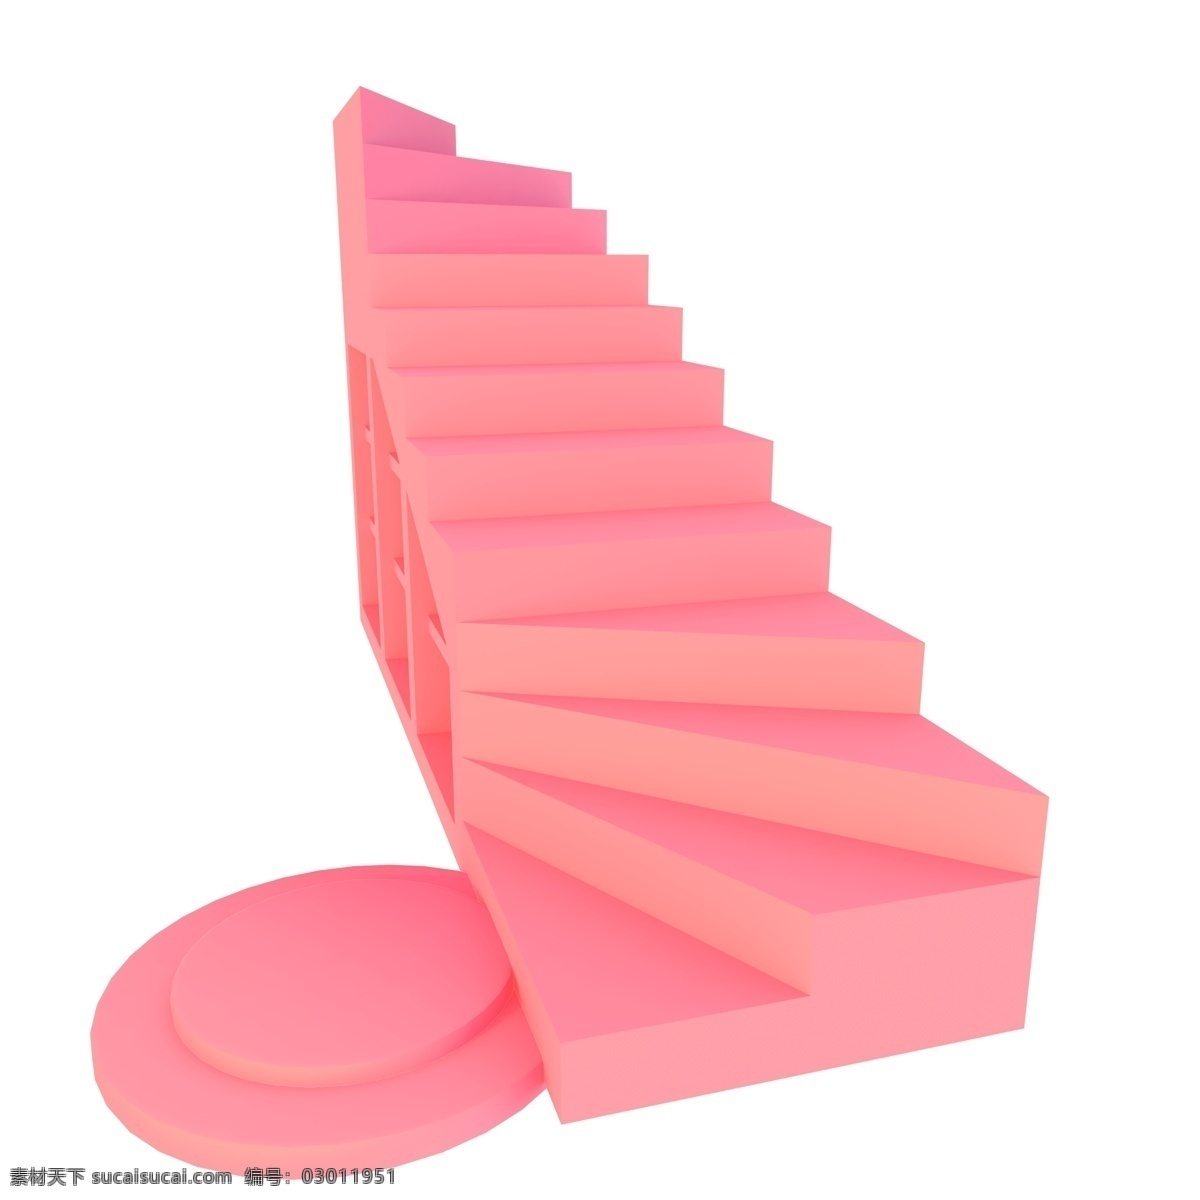 粉色台阶插图 粉色 台阶 插图